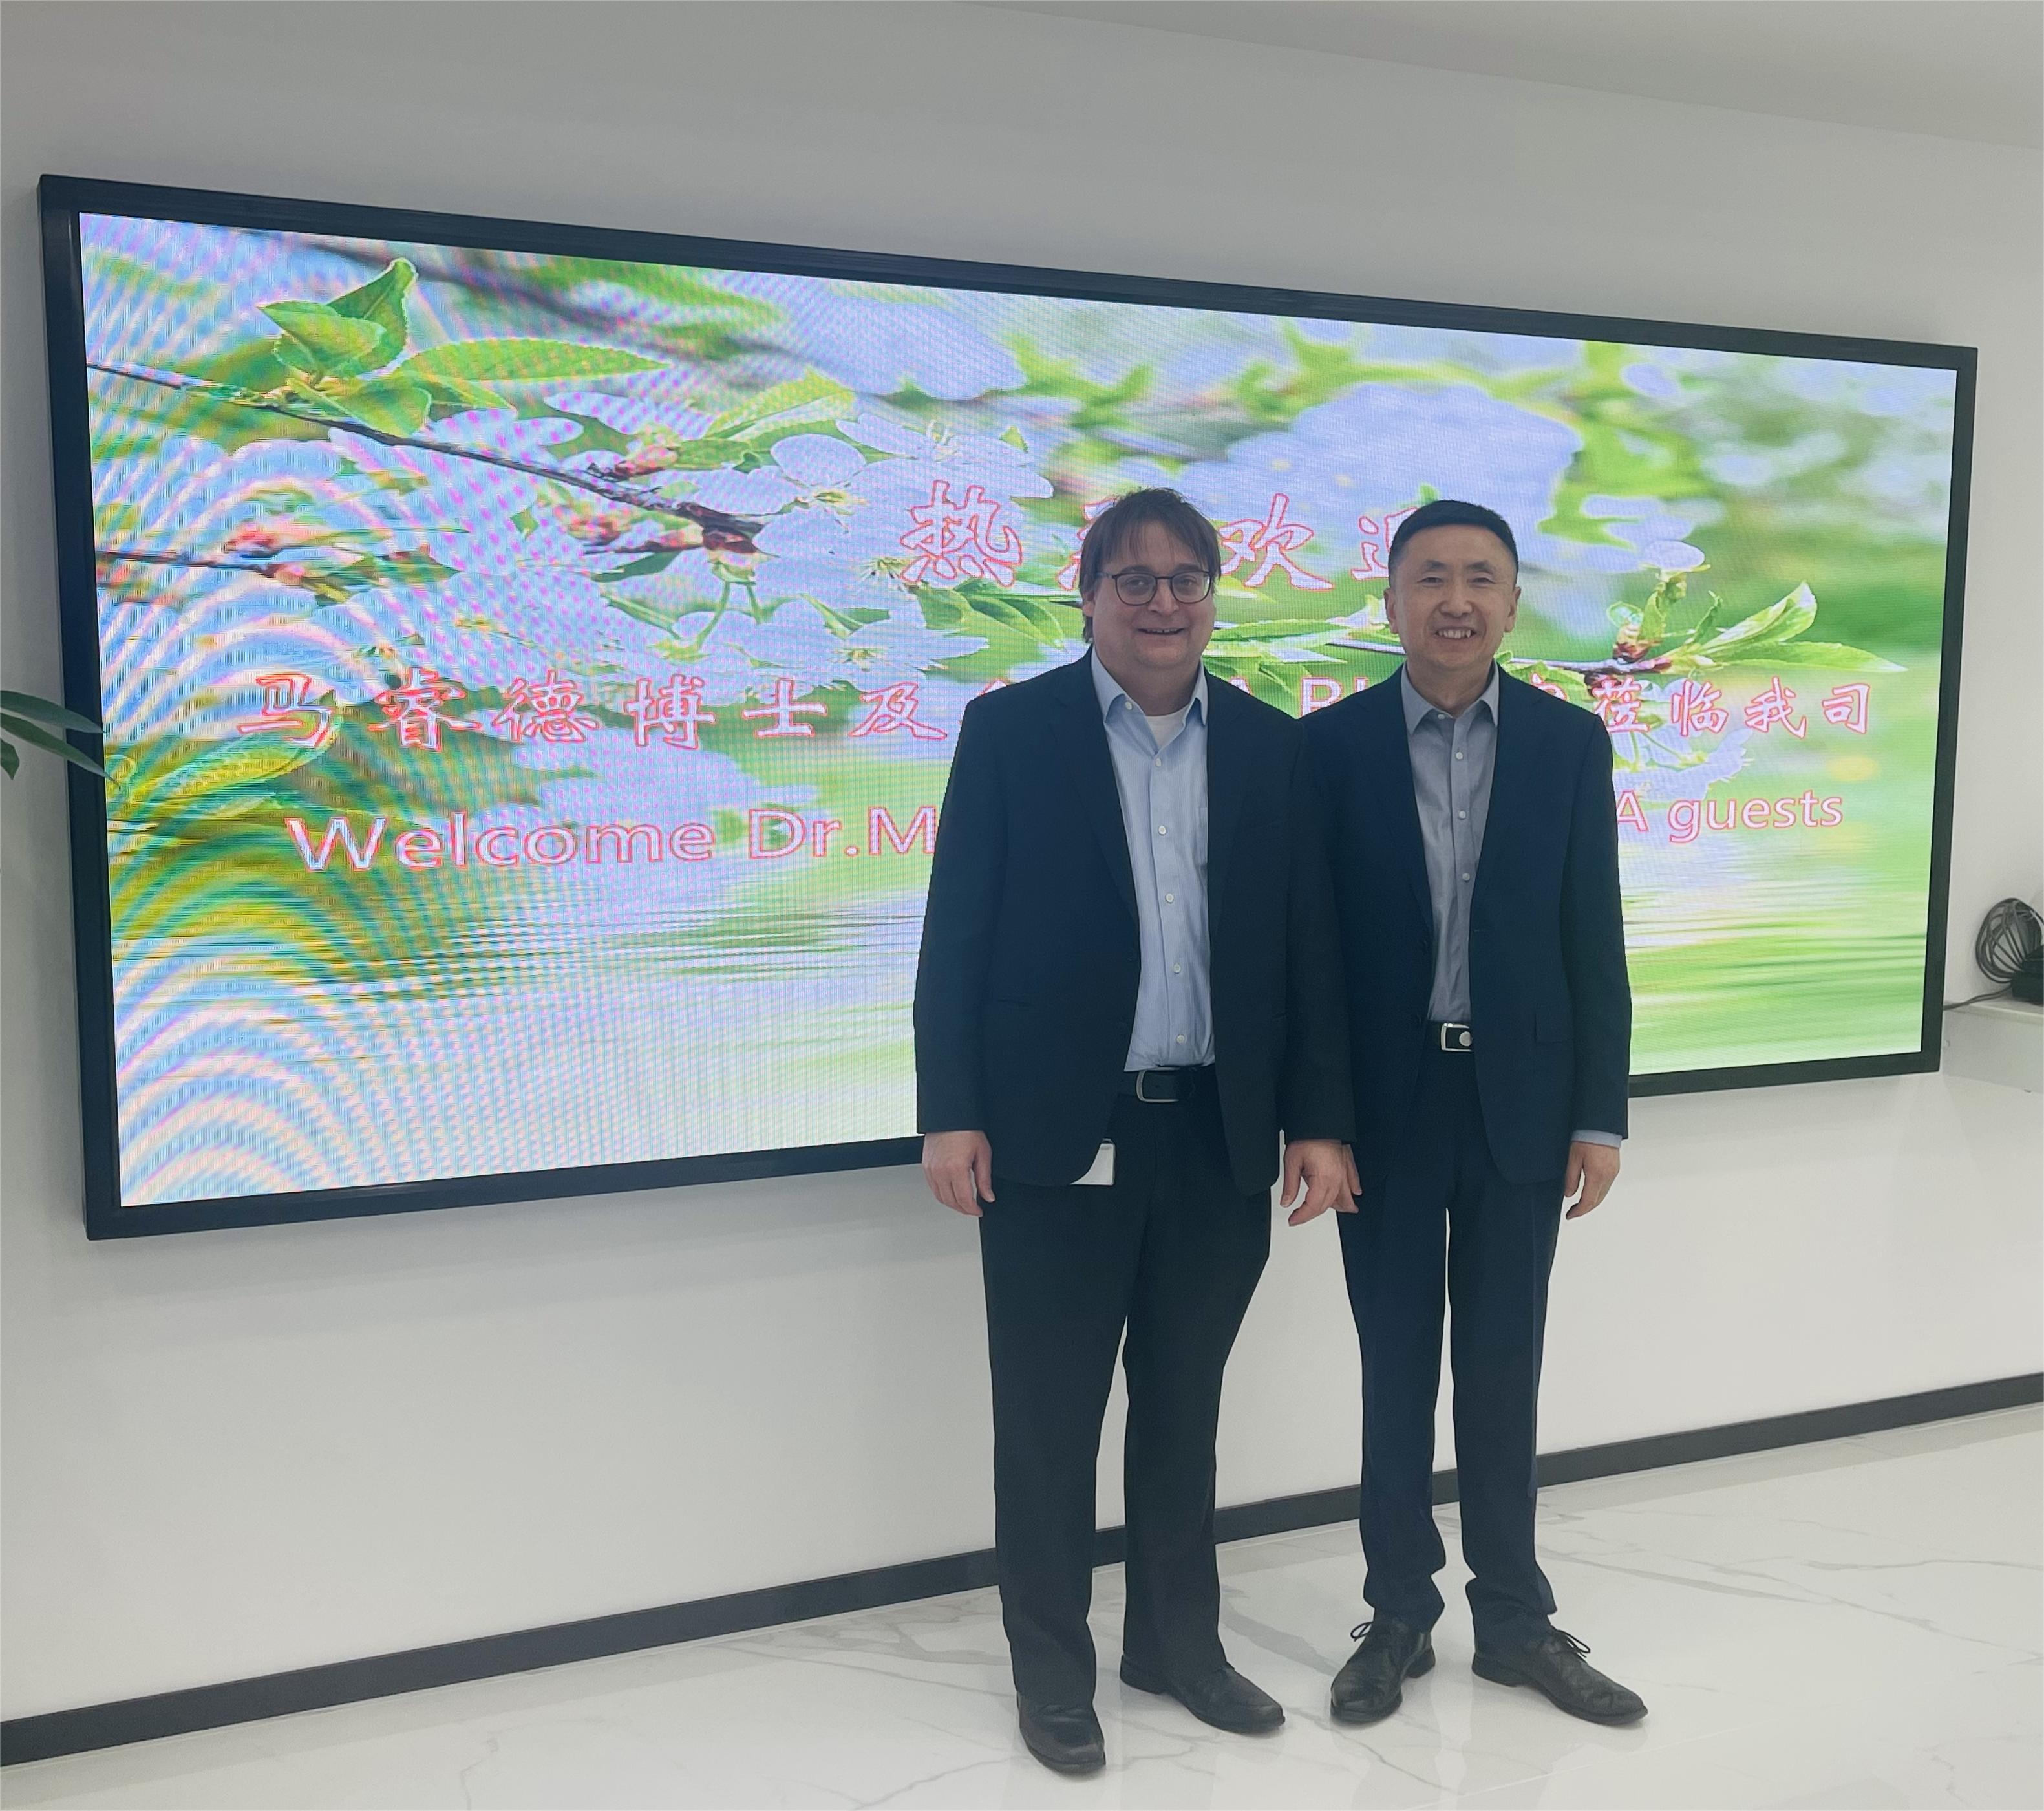 西門子數字化工業集團過程自動化事業部總經理馬睿德博士一行到訪北京進步公司